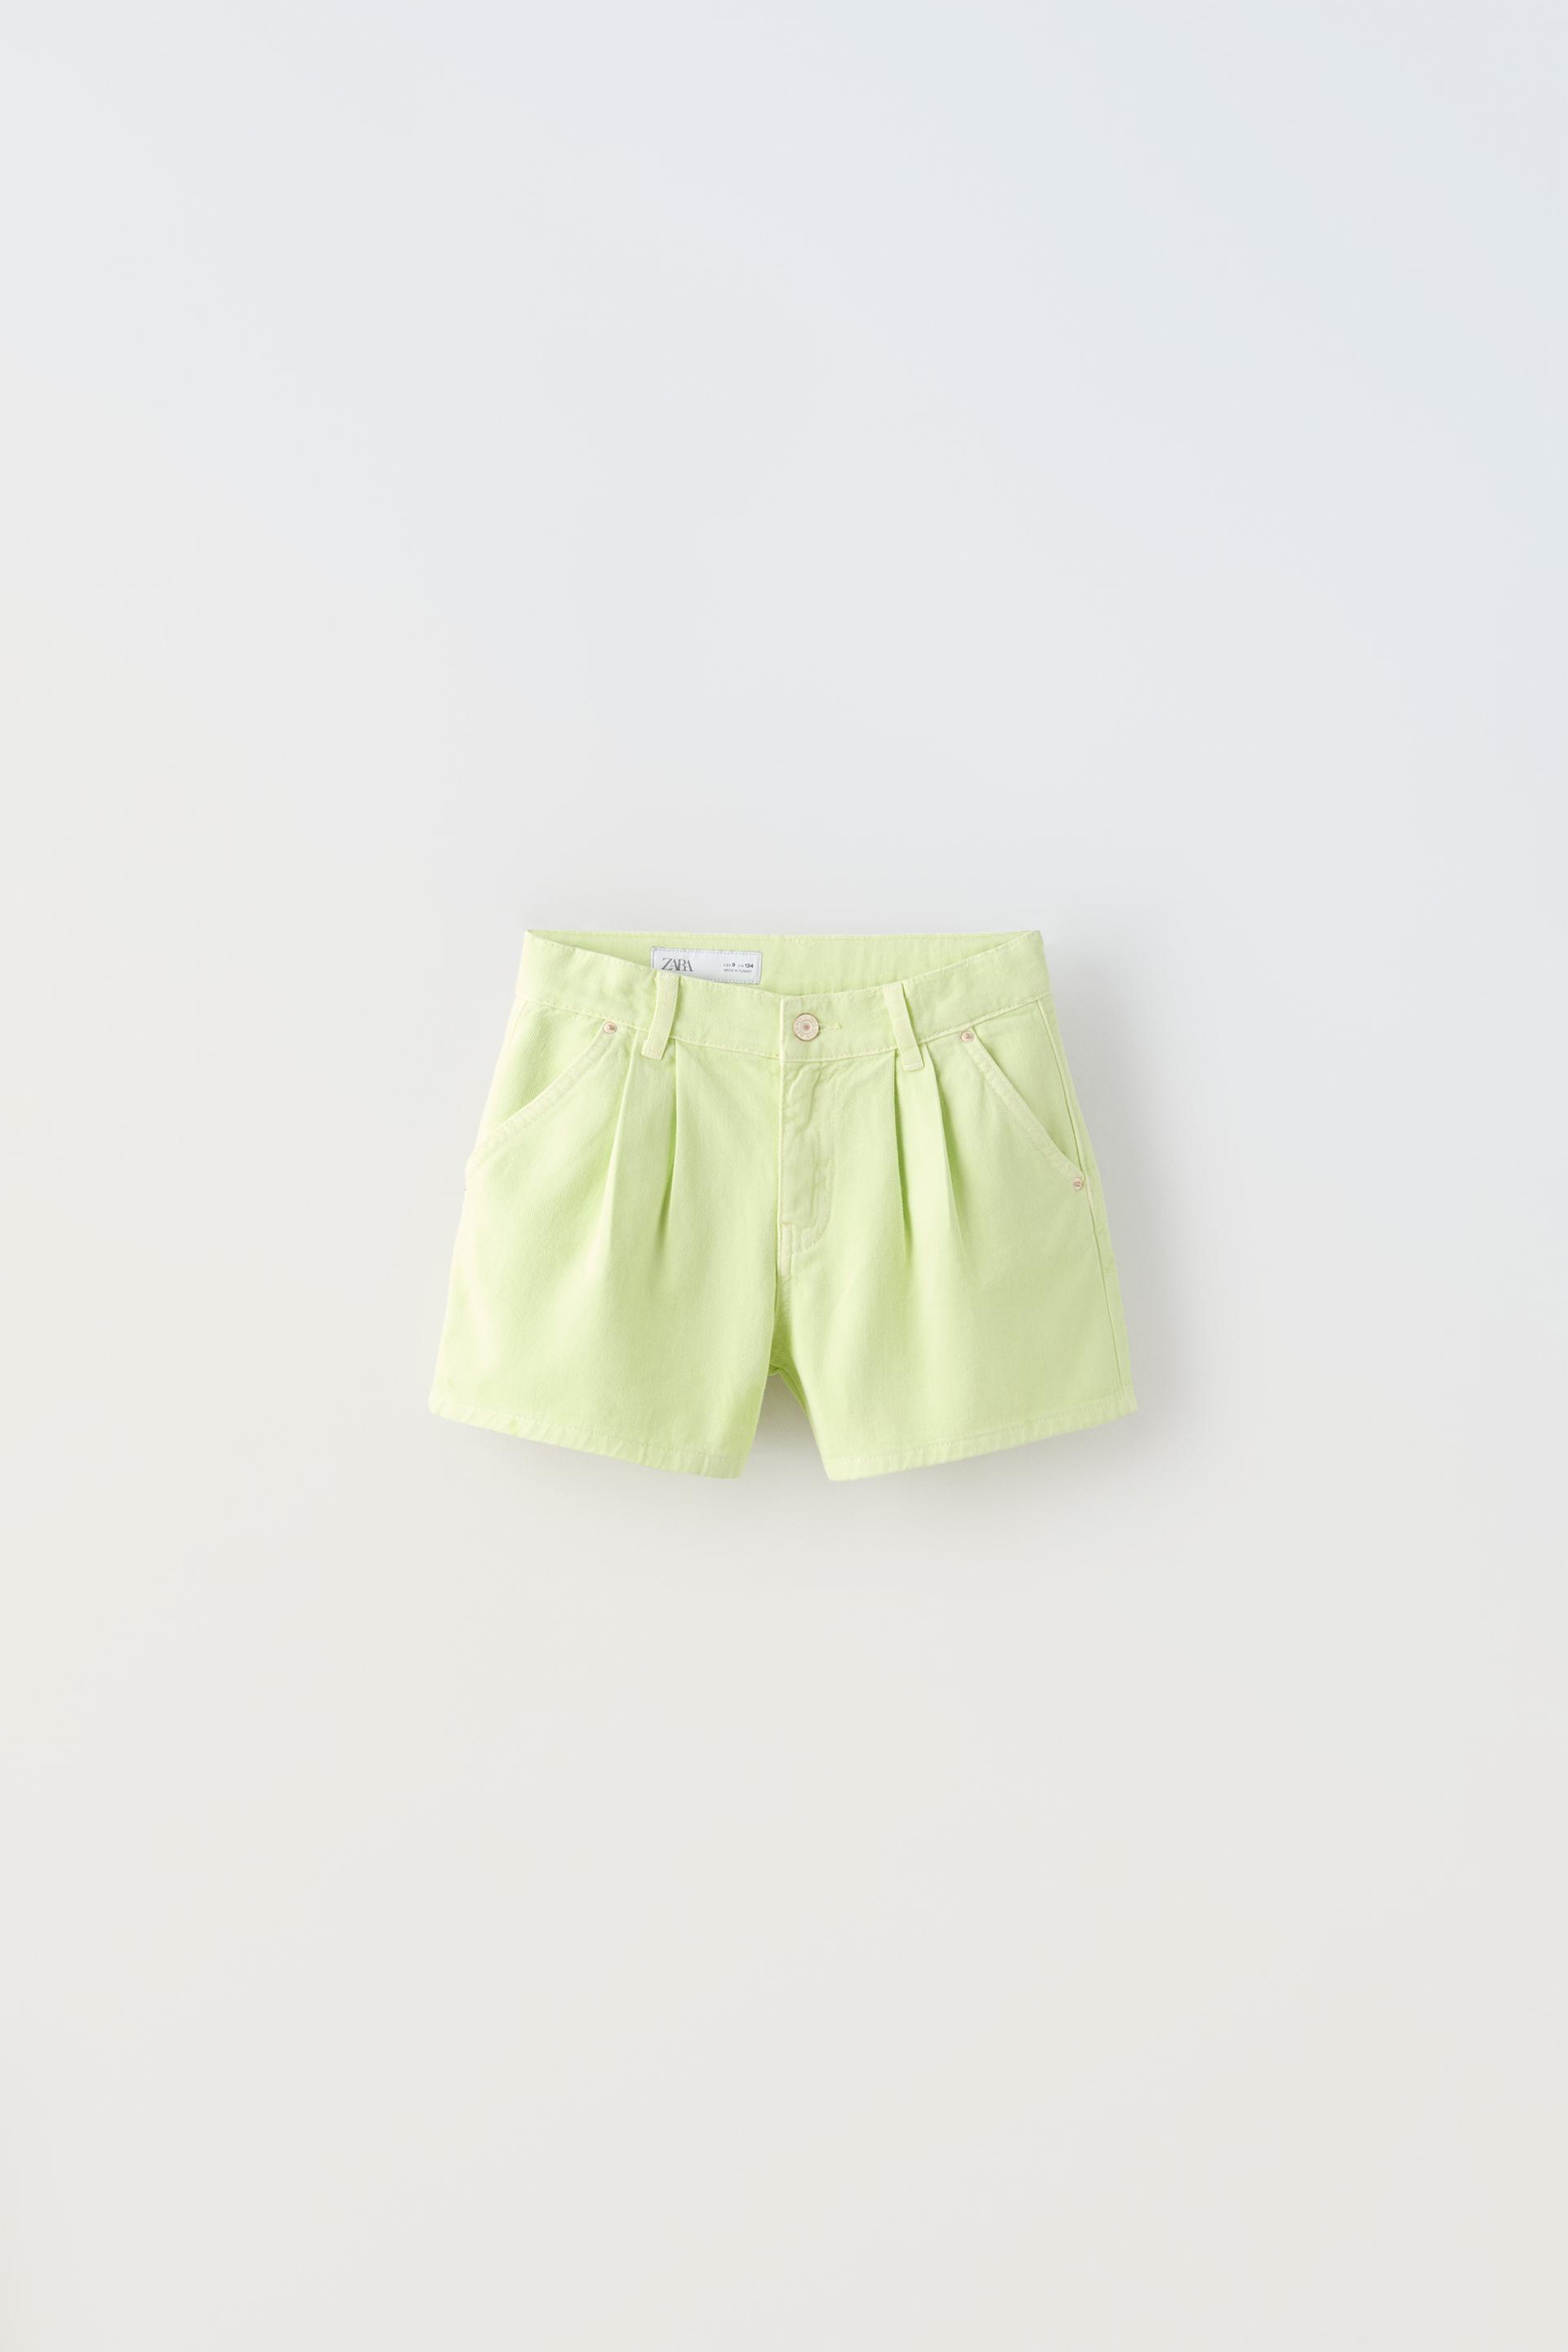 Шорты Zara Denim Bermuda, светло-зеленый юбка шорты zara crossover culottes светло зеленый